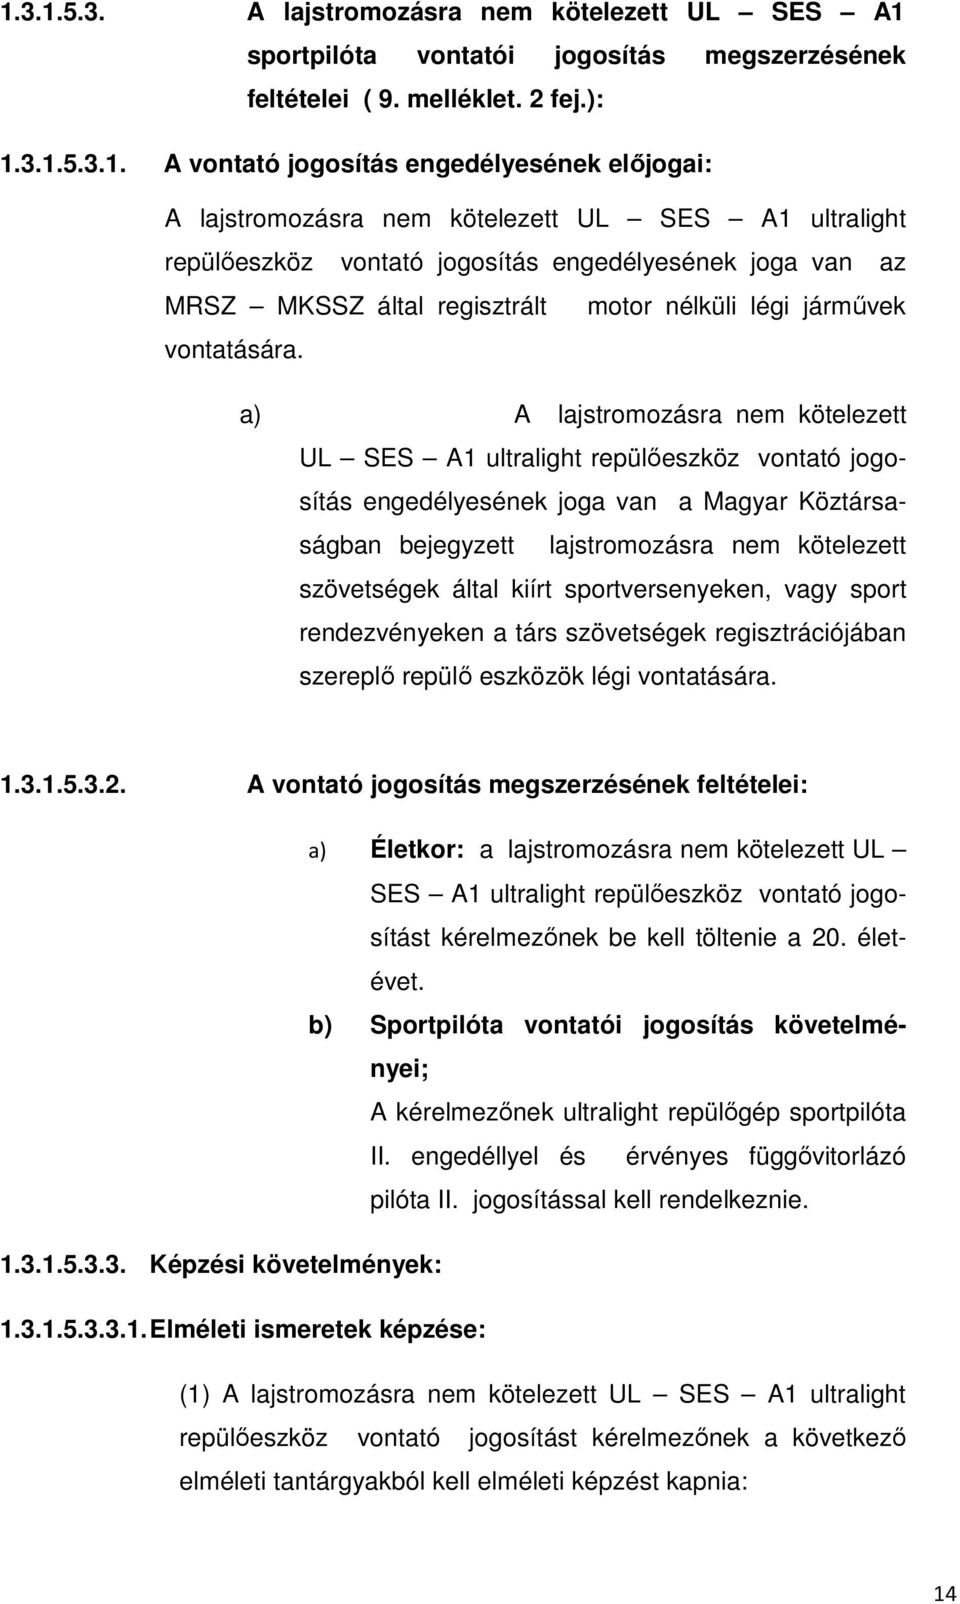 a) A lajstromozásra nem kötelezett UL SES A1 ultralight repülőeszköz vontató jogosítás engedélyesének joga van a Magyar Köztársaságban bejegyzett lajstromozásra nem kötelezett szövetségek által kiírt